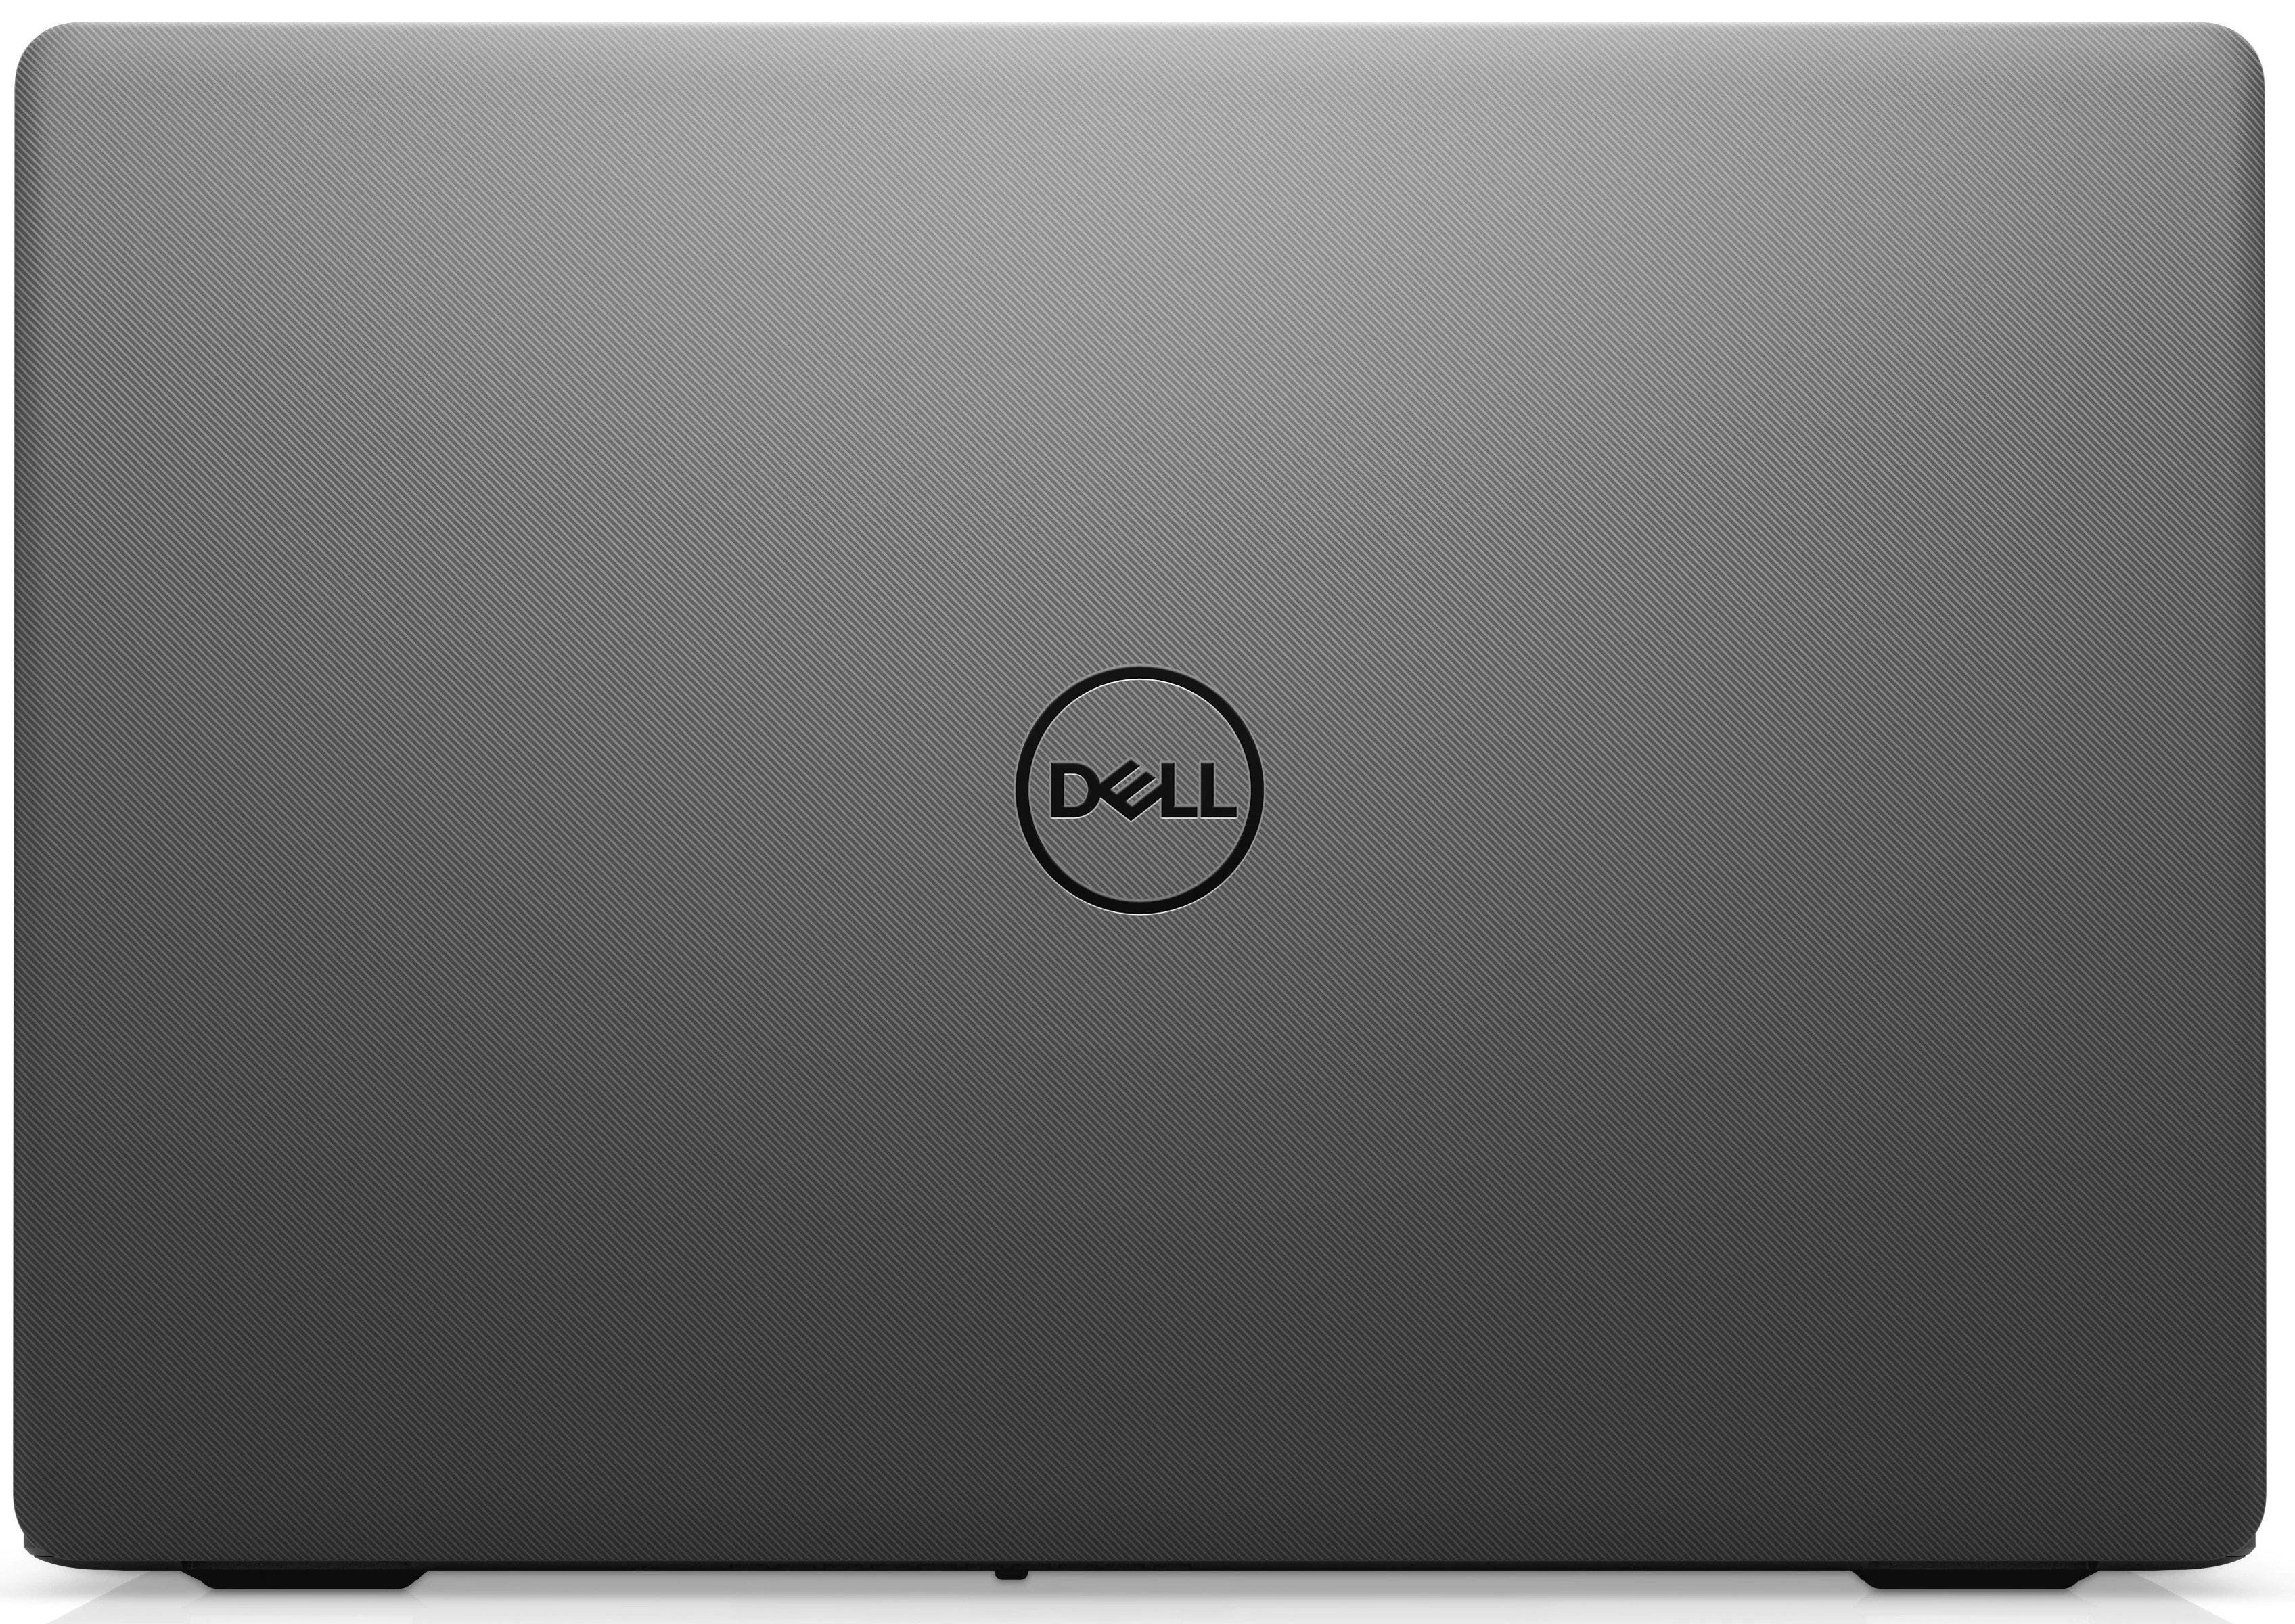 Ноутбук Dell Vostro 3500 Core i5-1135G7 (2.4GHz)15,6'' FullHD WVA Antiglare8GB (1x8GB) DDR4 256GB SSD NV GF MX330 (2GB) 3cell (42 WHr),FPR,TPM Linux 1y NBD black-39244